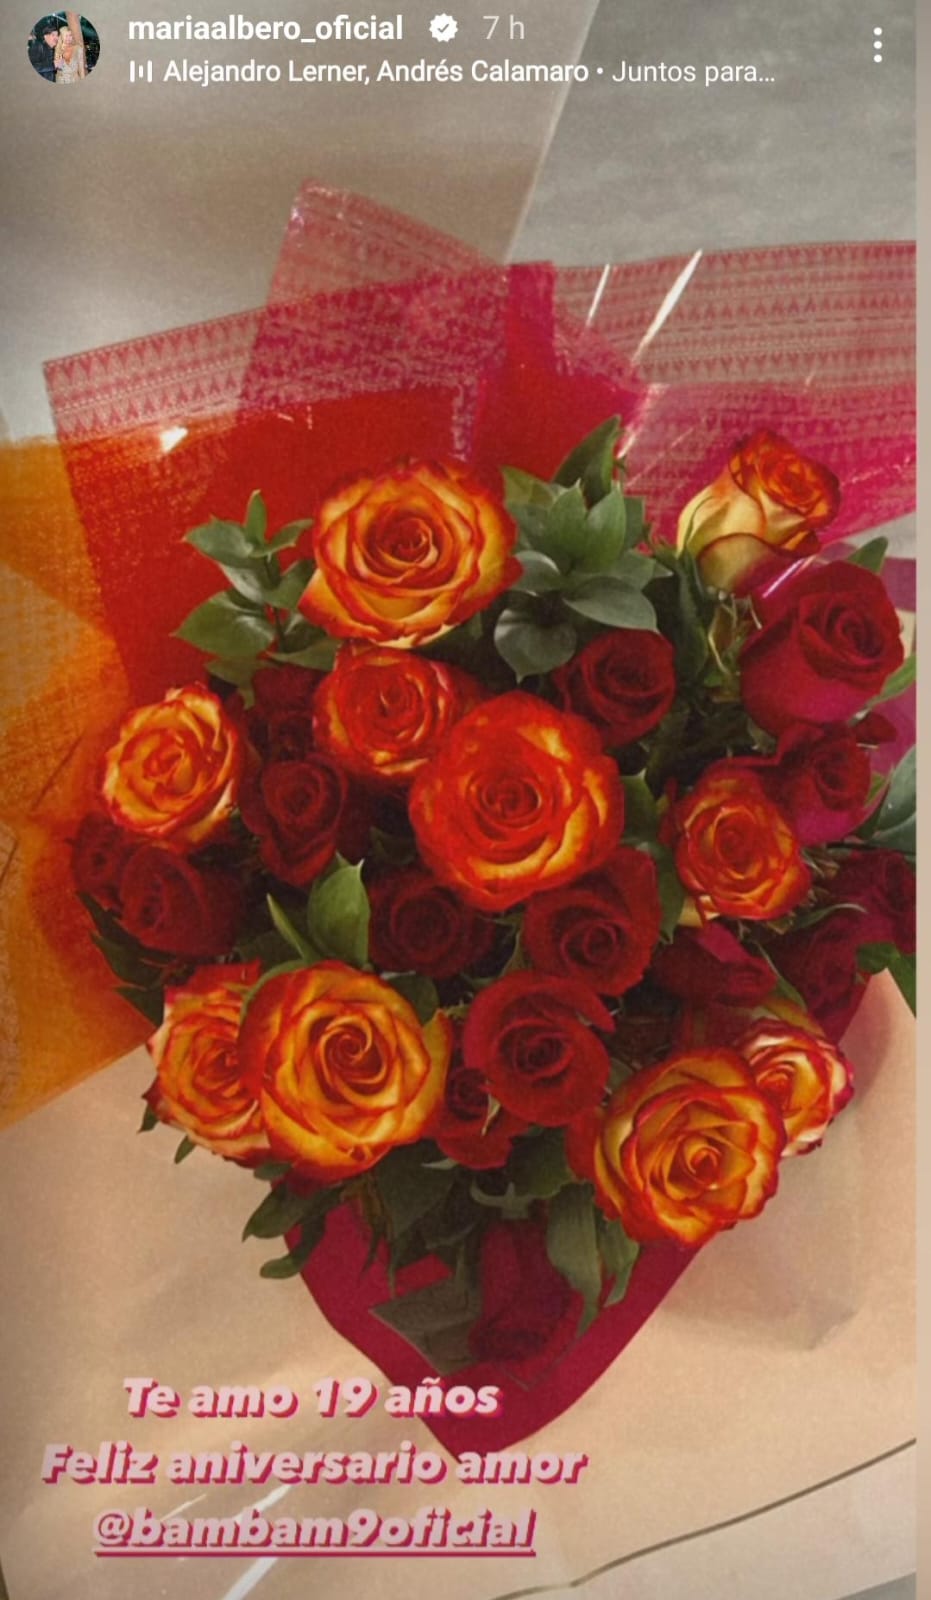 María Alberó recibió especial regalo de Iván Zamorano para su aniversario: "Por muchos años más"
En específico, Zamorano la sorprendió con un gran ramo de rosas, el cual María Alberó mostró a través de sus historias de Instagram.

"Te amo. 19 años juntos. Feliz aniversario mi amor", comentó la modelo.